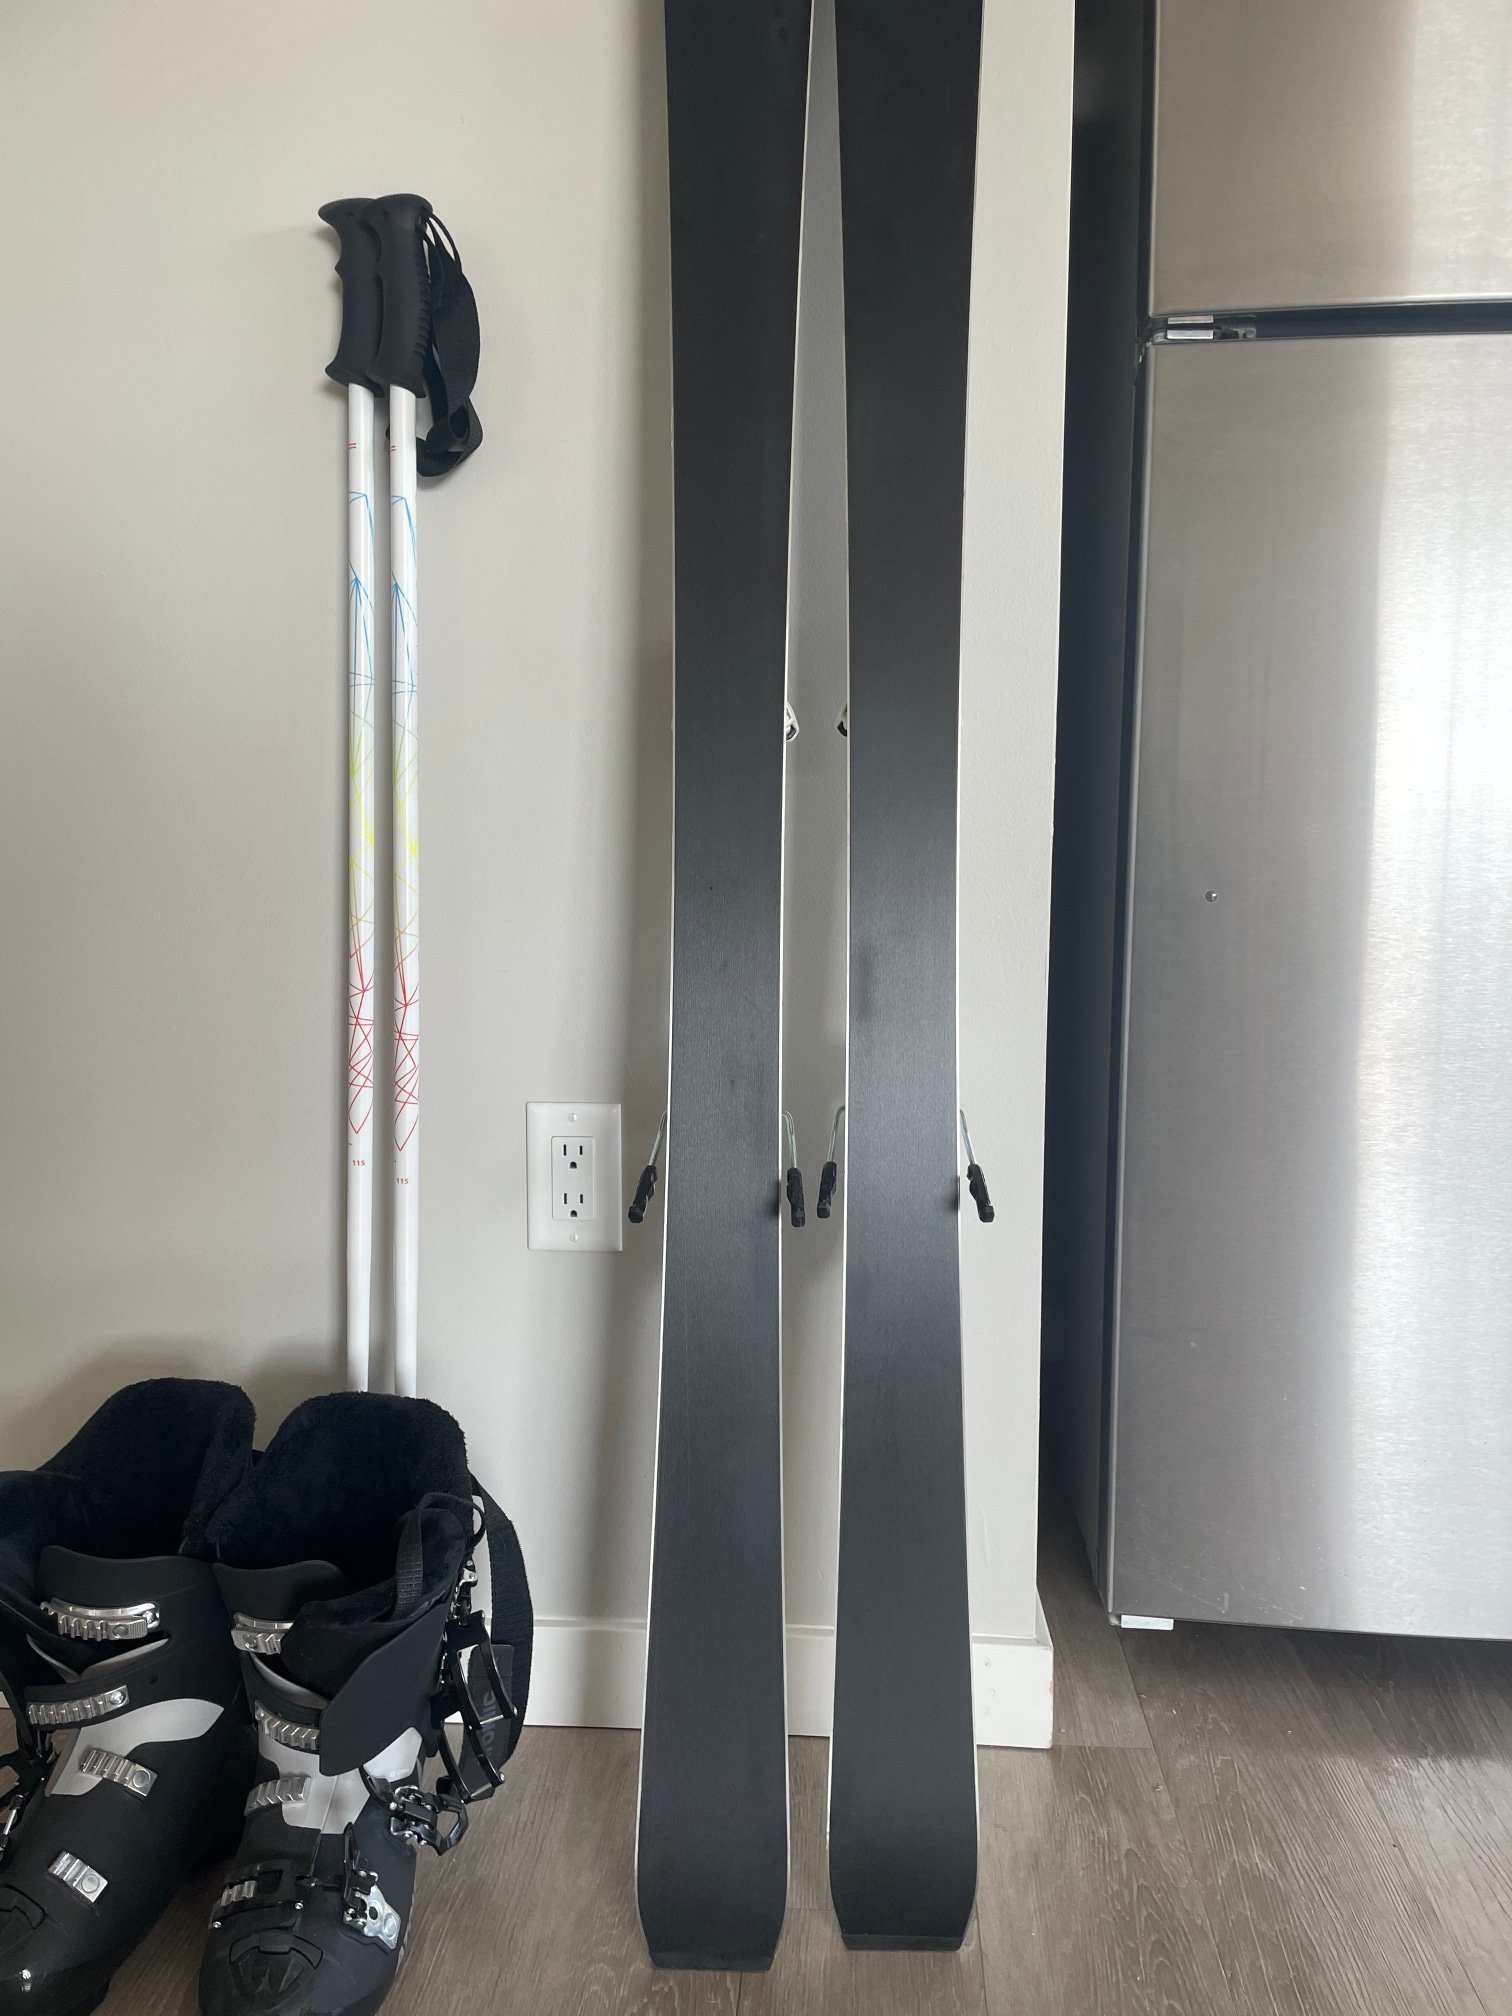 Used 2022 Evo Refract 46in (115cm) Ski Poles